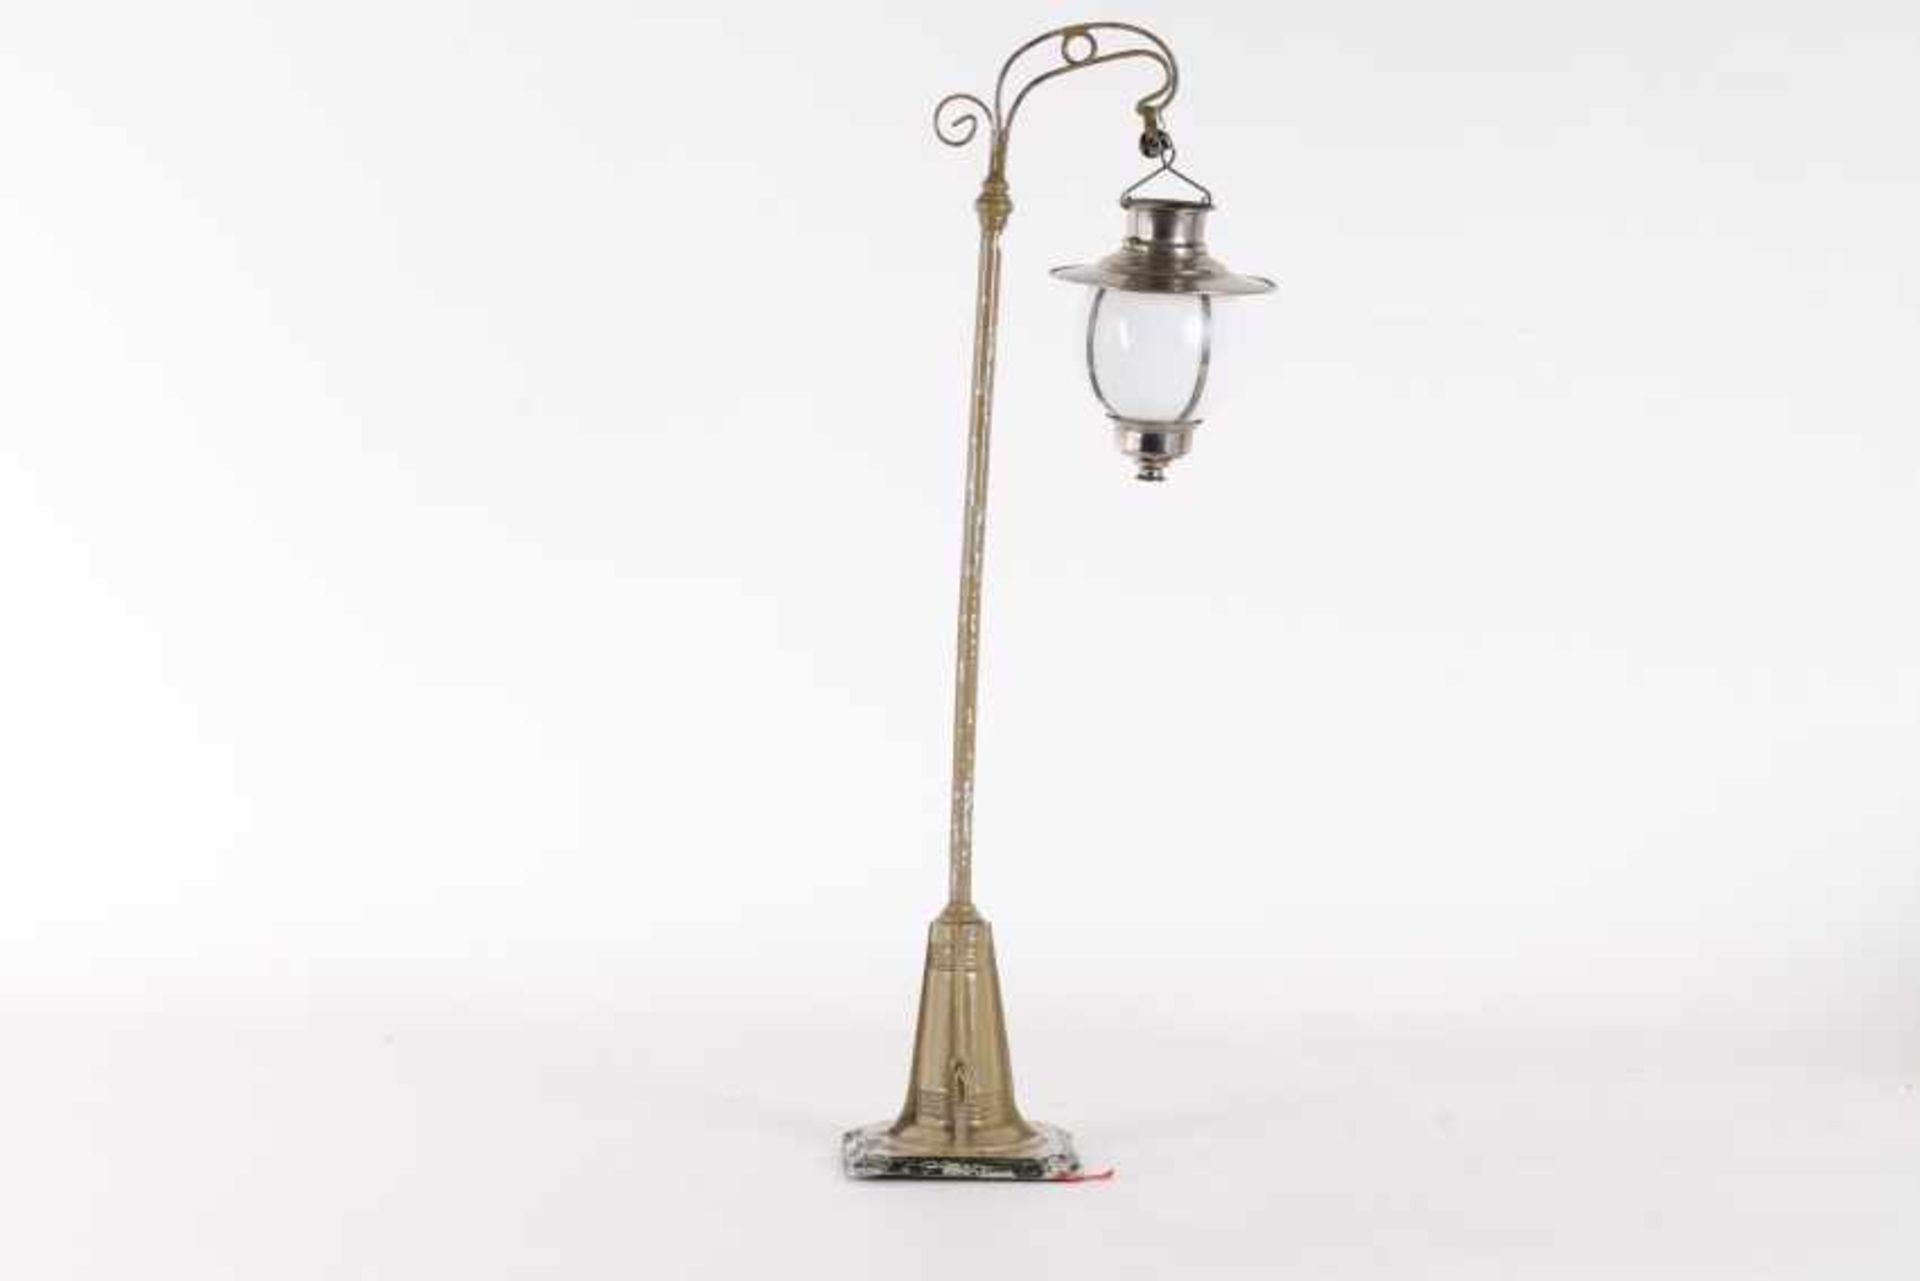 Bing BogenlampeBing Bogenlampe, ähnl.10/628, 38 cm hoch, Kurbel ohne Funktion, Kette bzw. Schnur